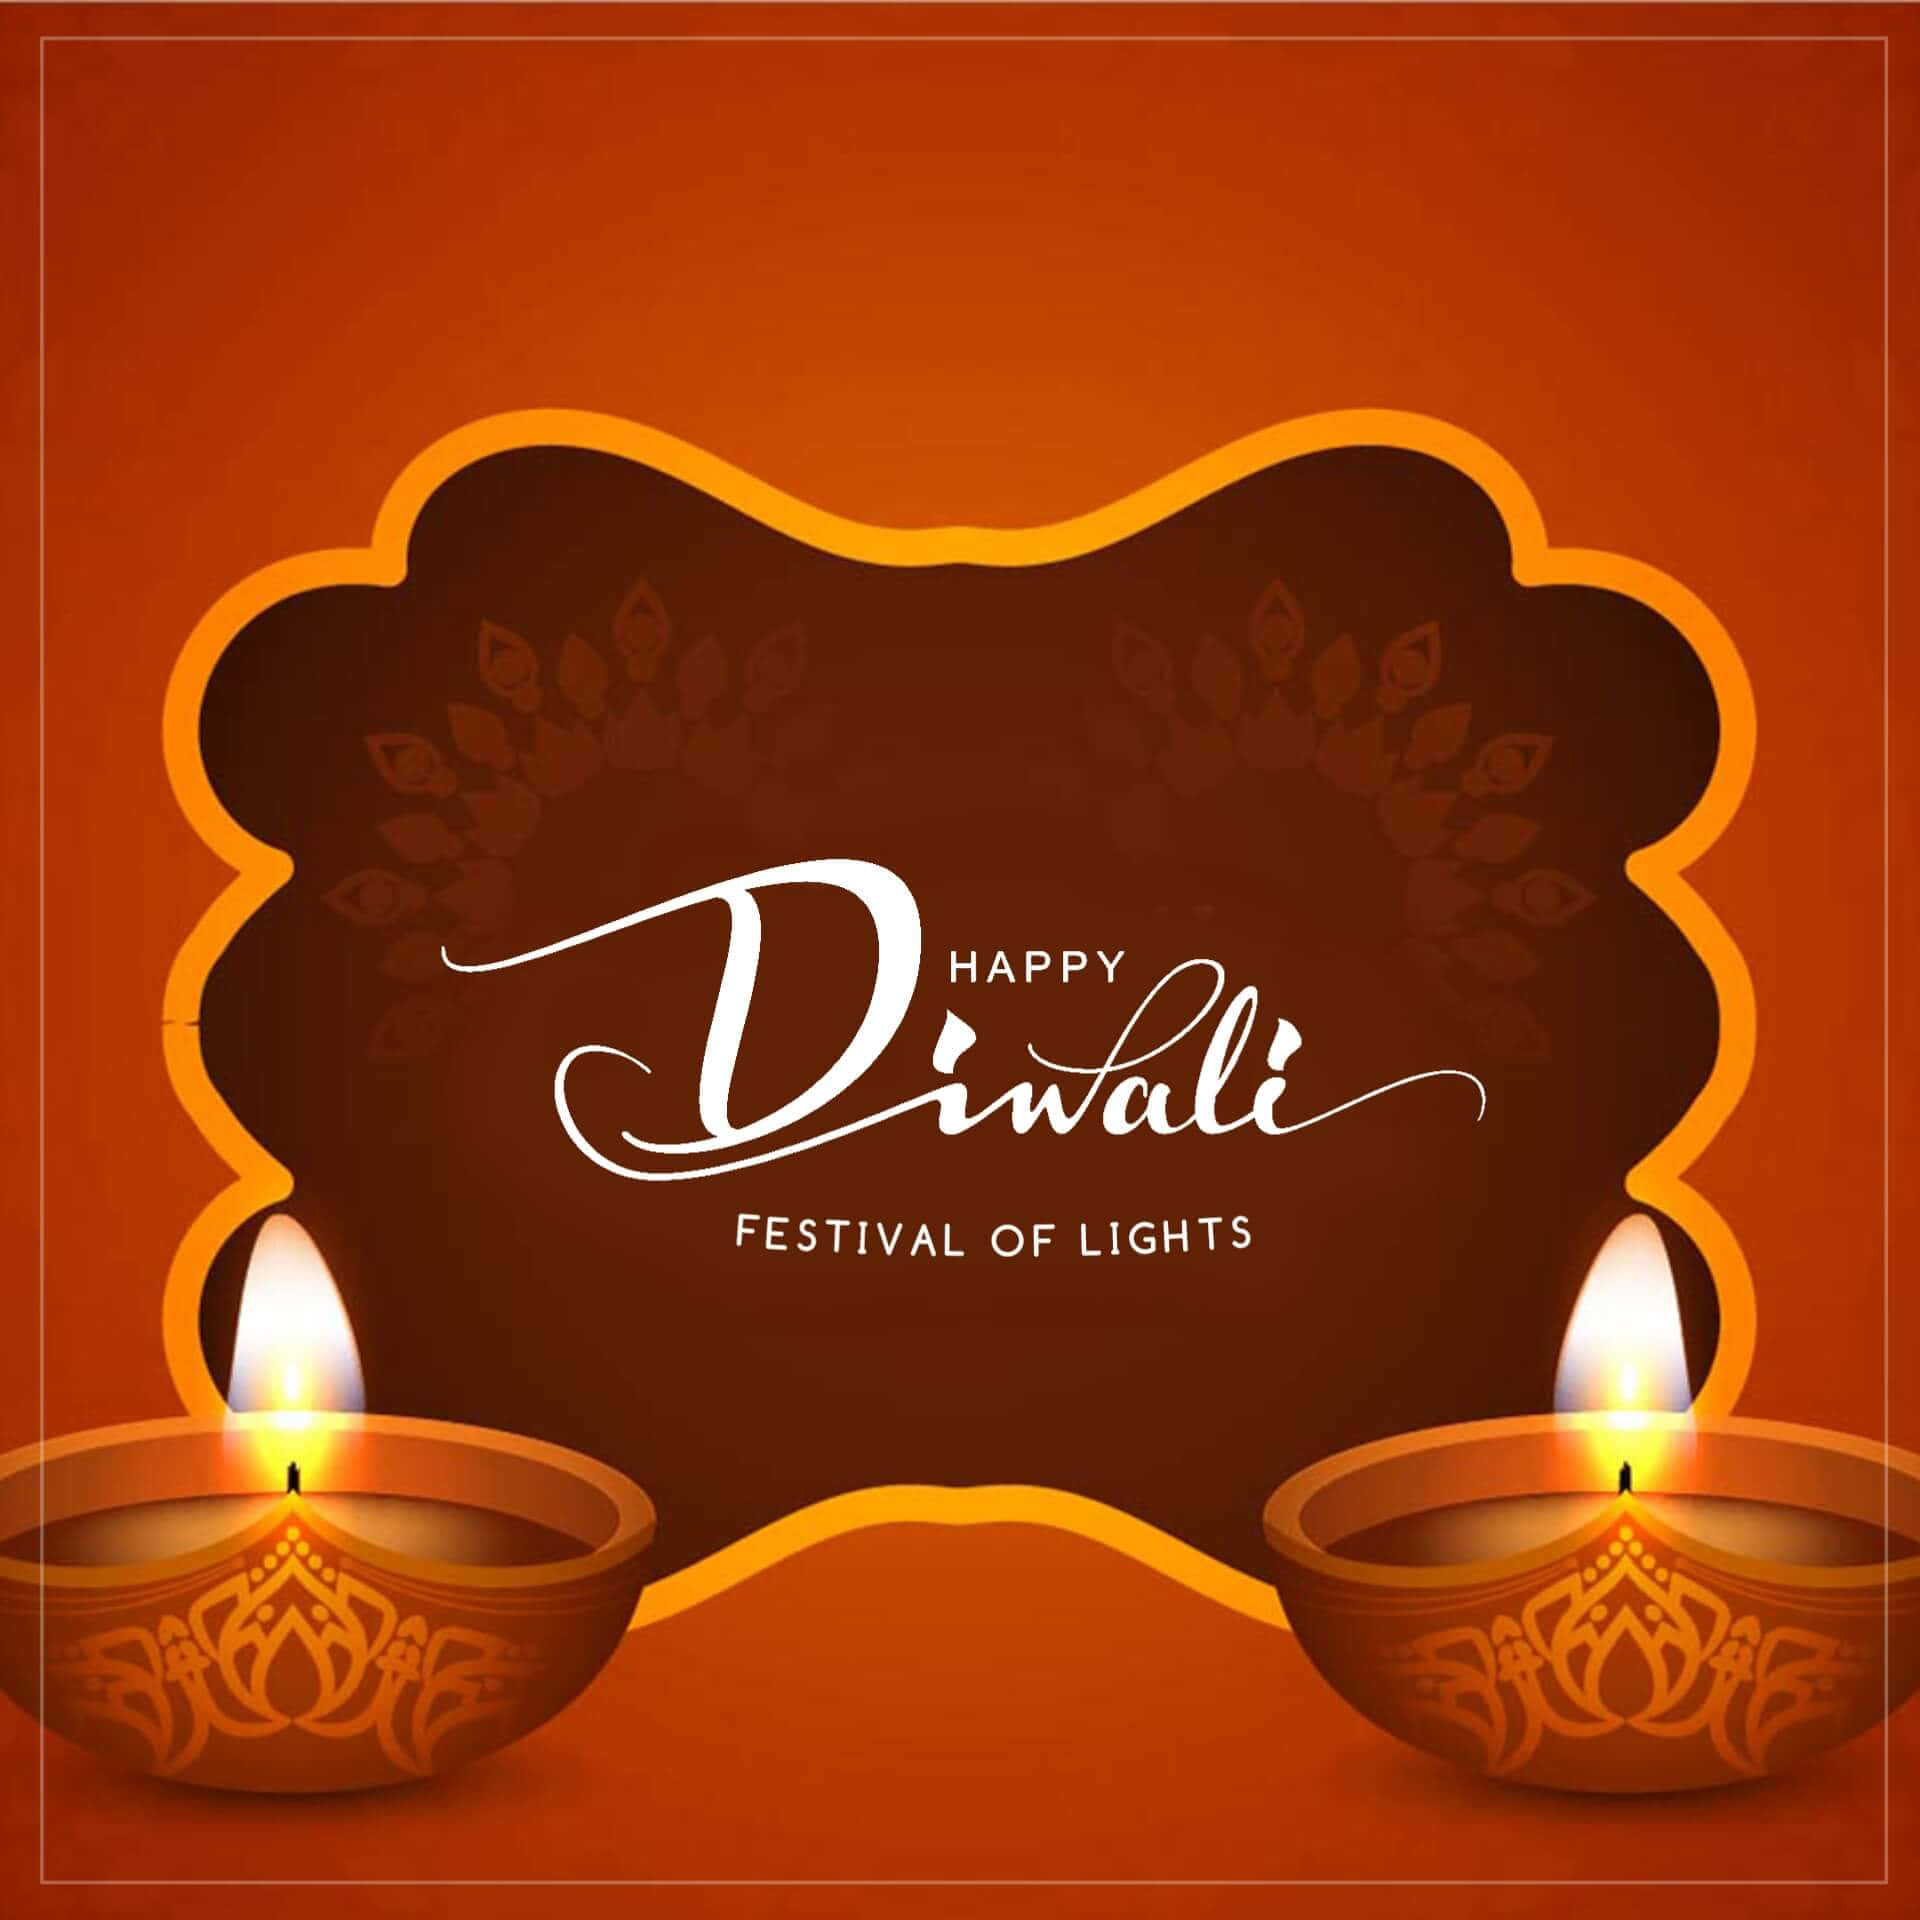 Önskardig Glädje Och Välstånd Denna Diwali!